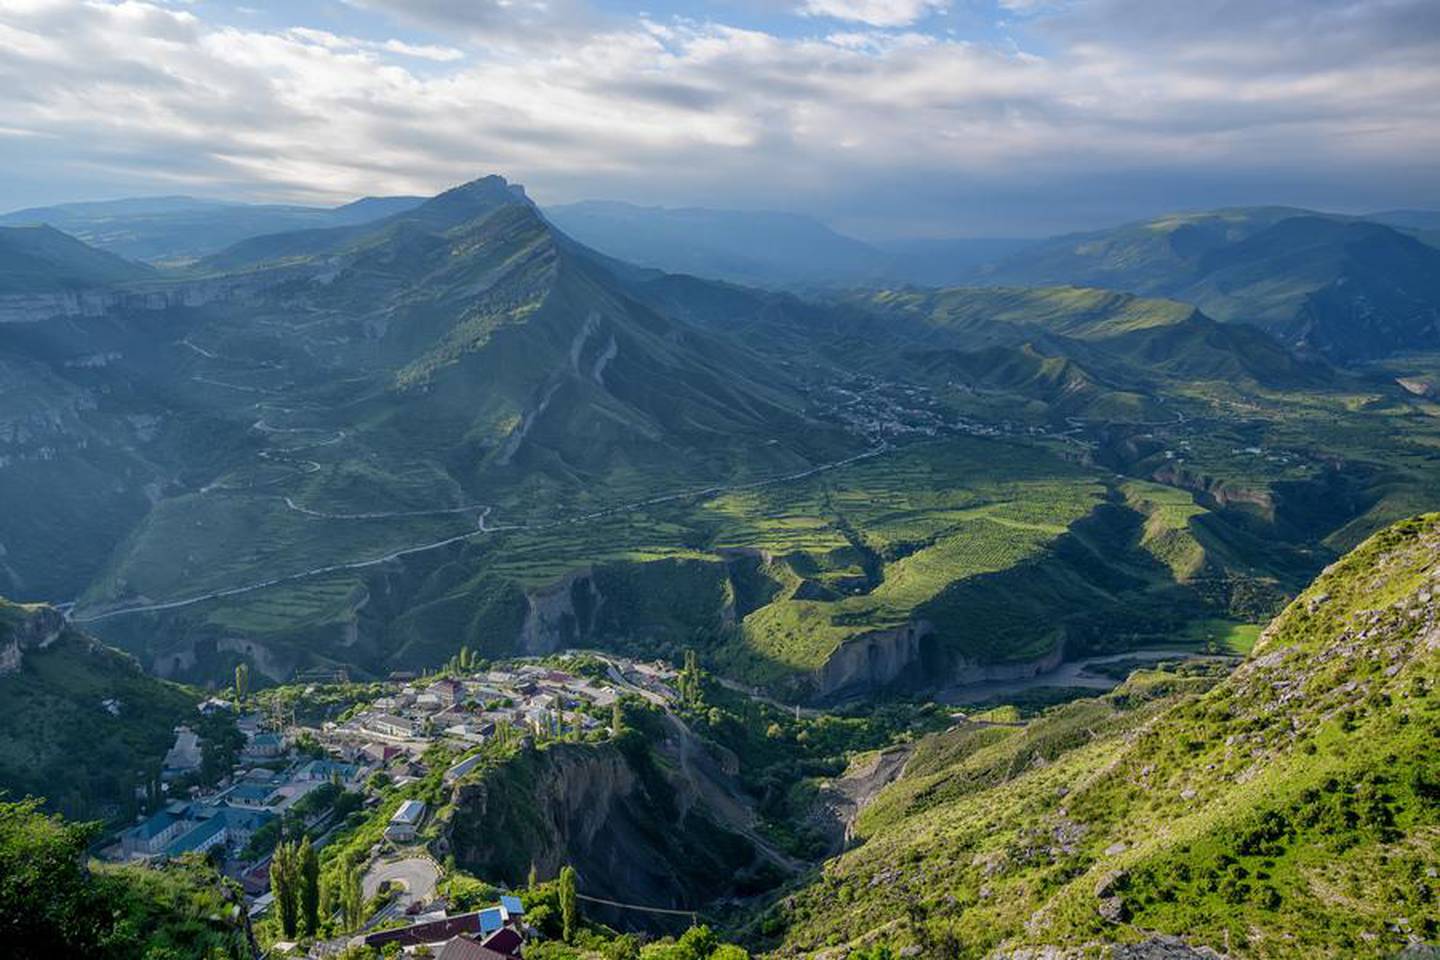 Mountain landscape in Dagestan - Makhachkala